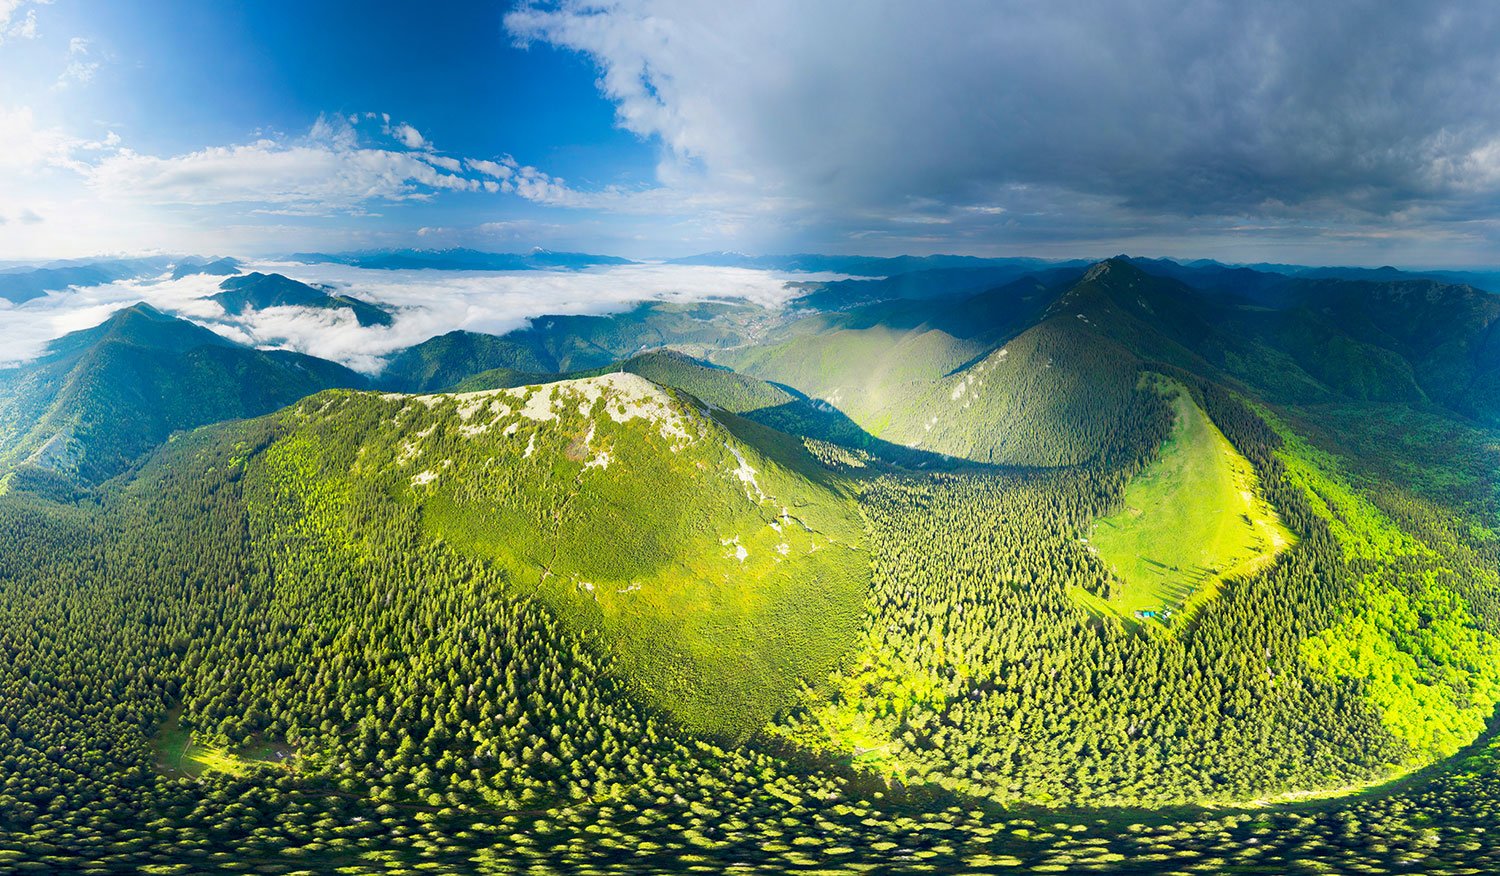 Ukraine, Carpathians, stone peaks Gorgan